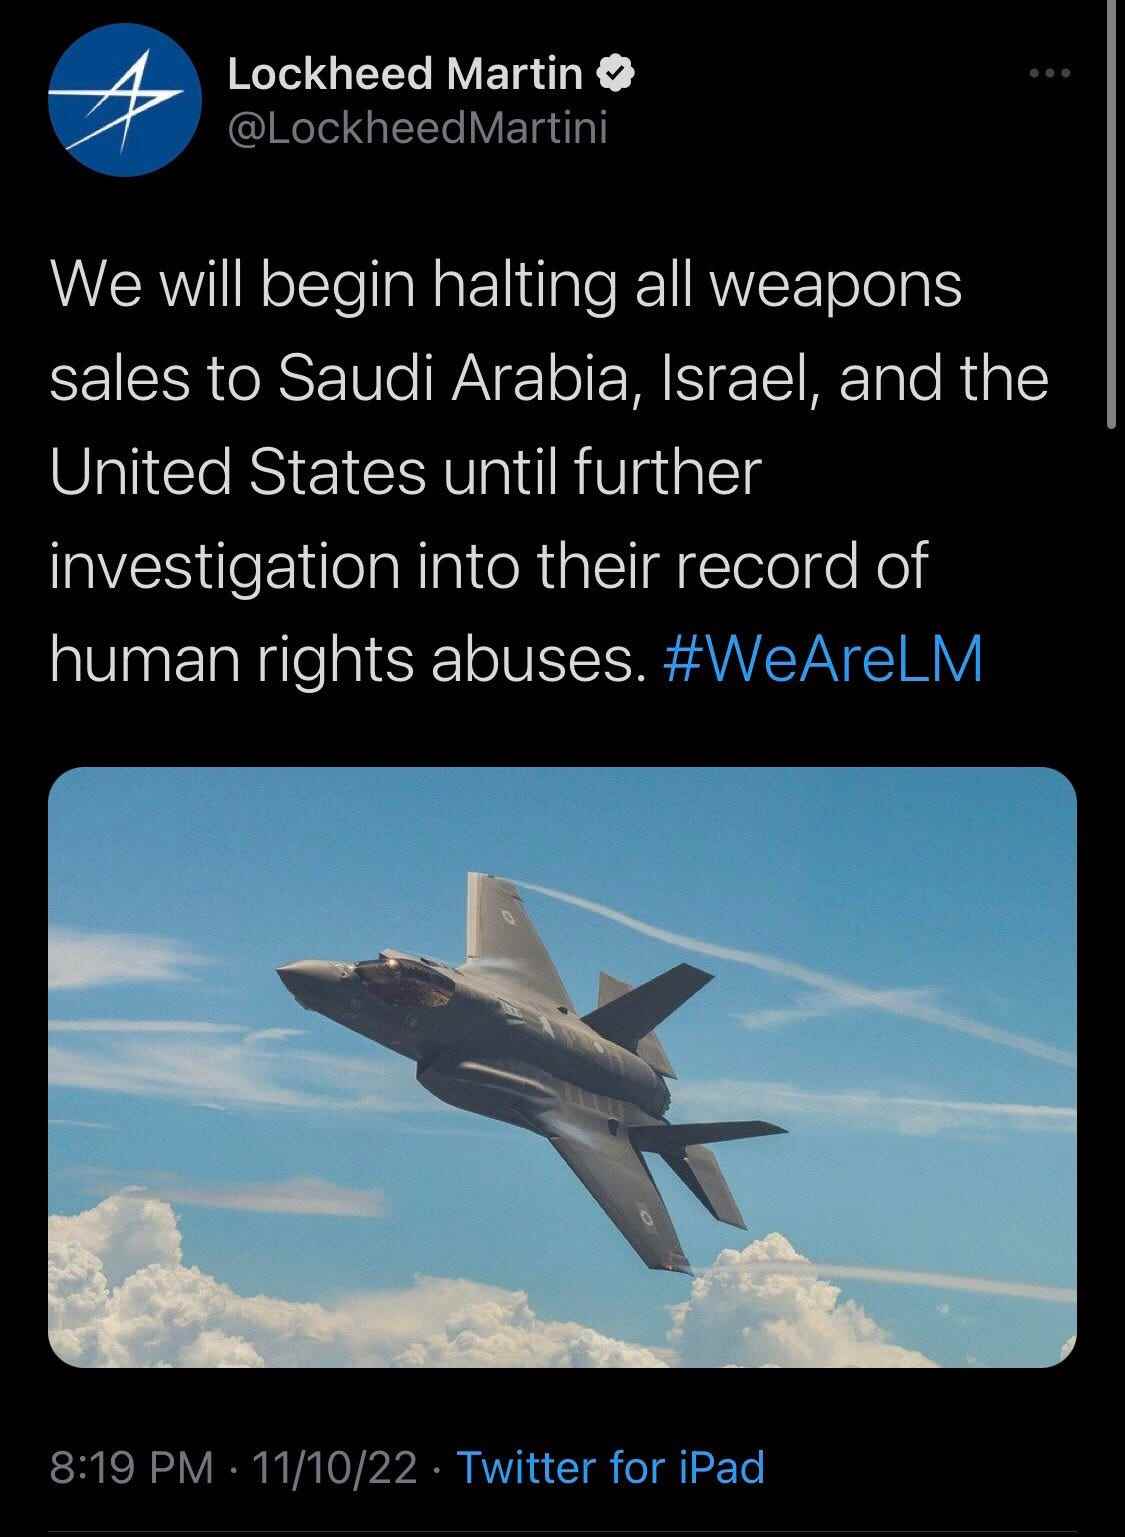 Tweet von einem Konto, das sich als Verteidigungsunternehmen Lockheed Martin ausgibt.